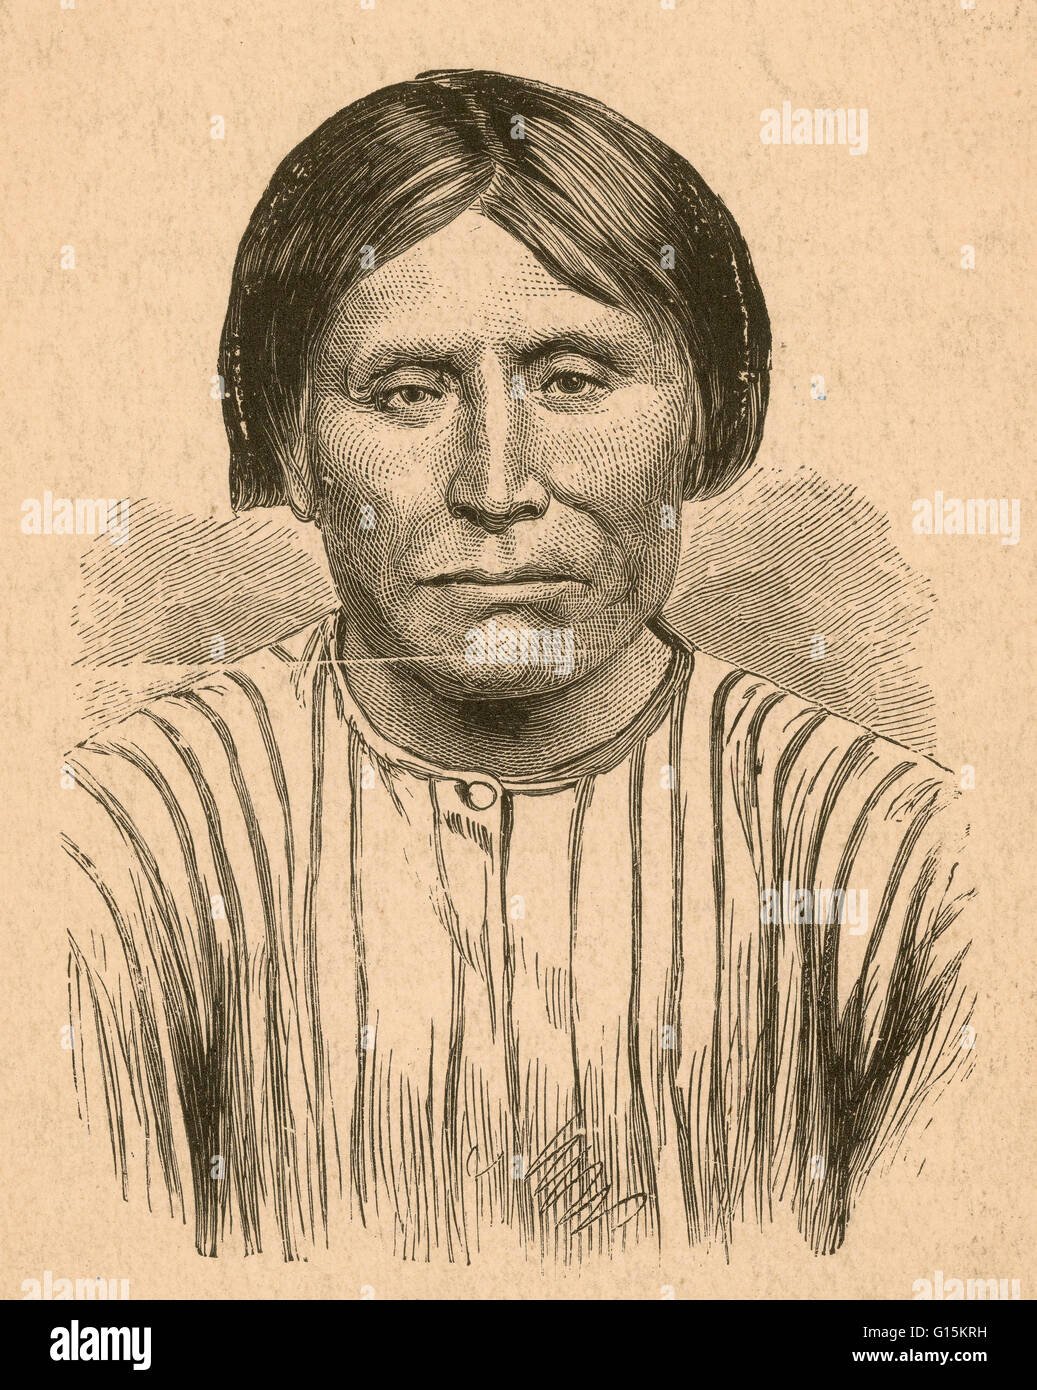 Porträt des Kintpuash (1837-1873), auch bekannt als Captain Jack, Chef des Native American Modoc Stammes und ihr Führer während des Krieges Modoc. Modoc Krieg war ein bewaffneter Konflikt zwischen der Native American Modoc-Stamm und der United States Army in sou Stockfoto